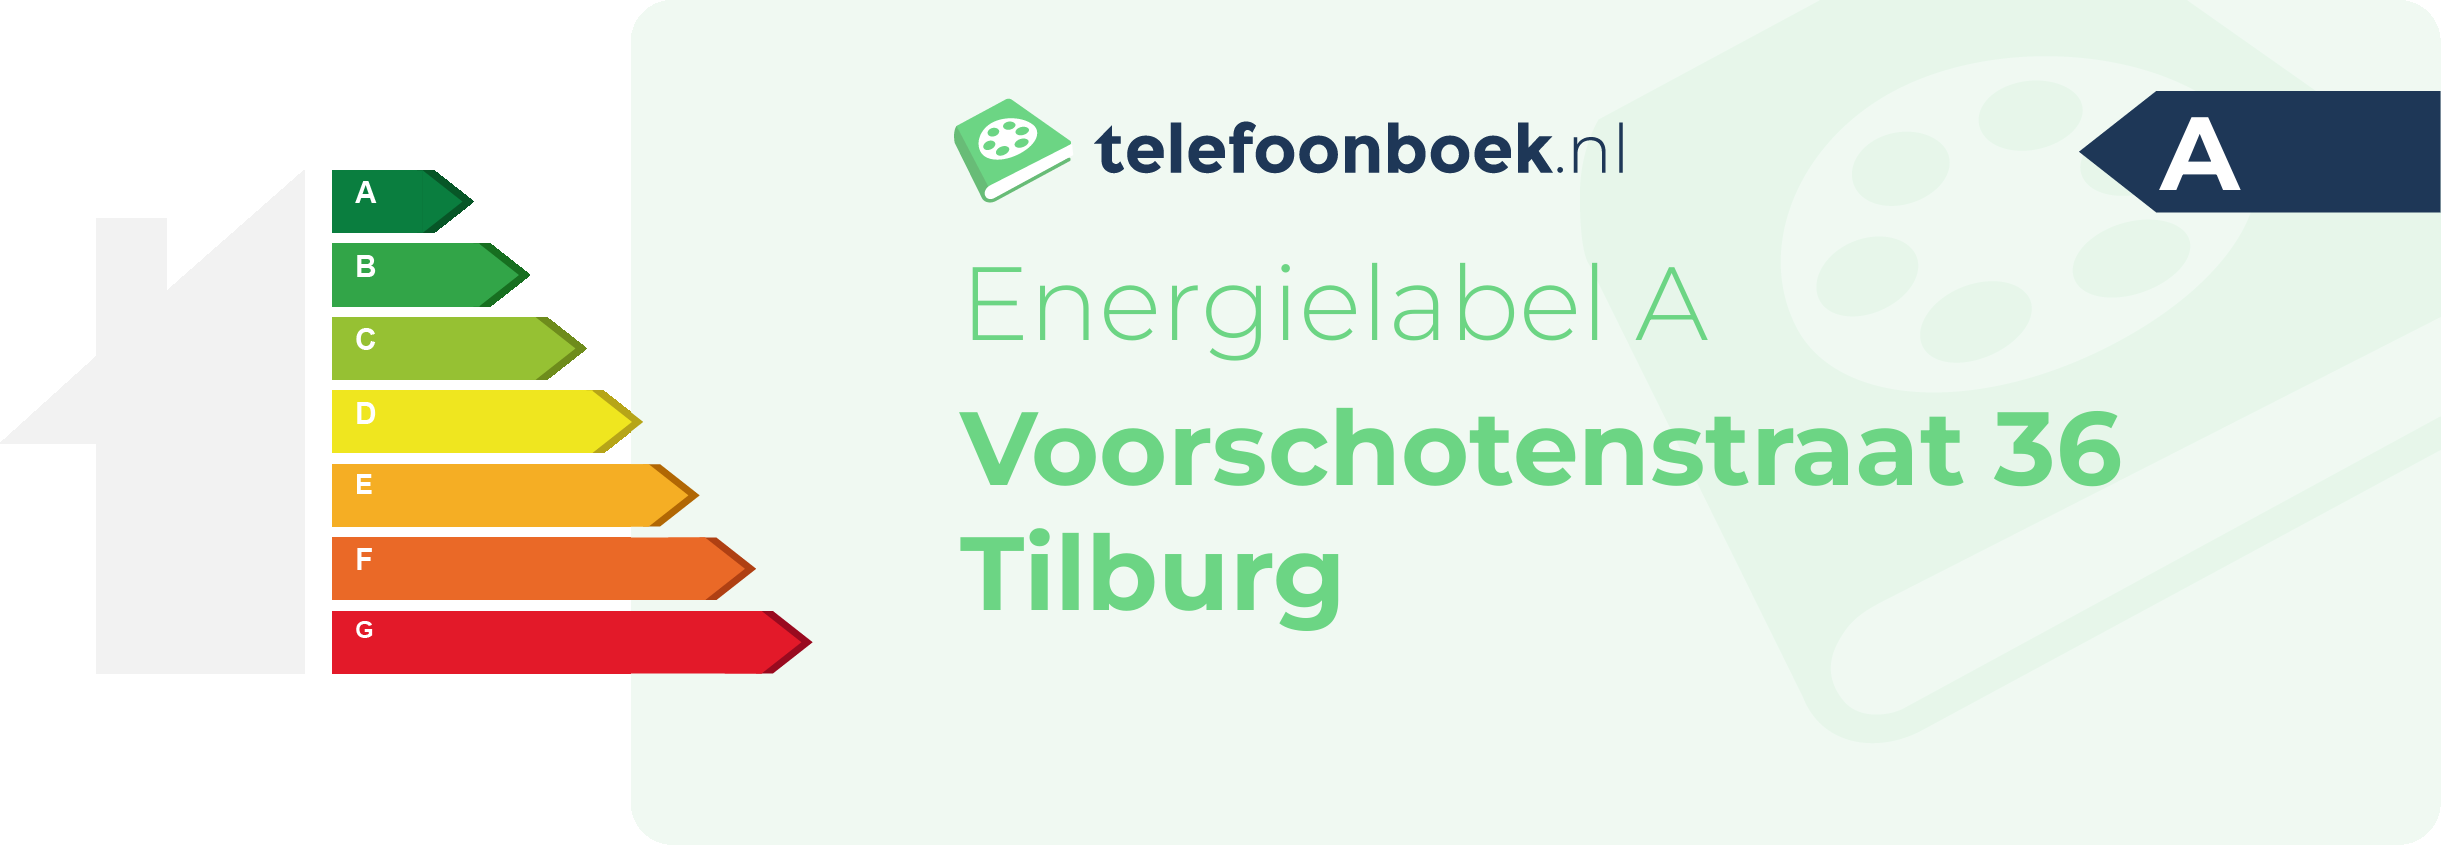 Energielabel Voorschotenstraat 36 Tilburg